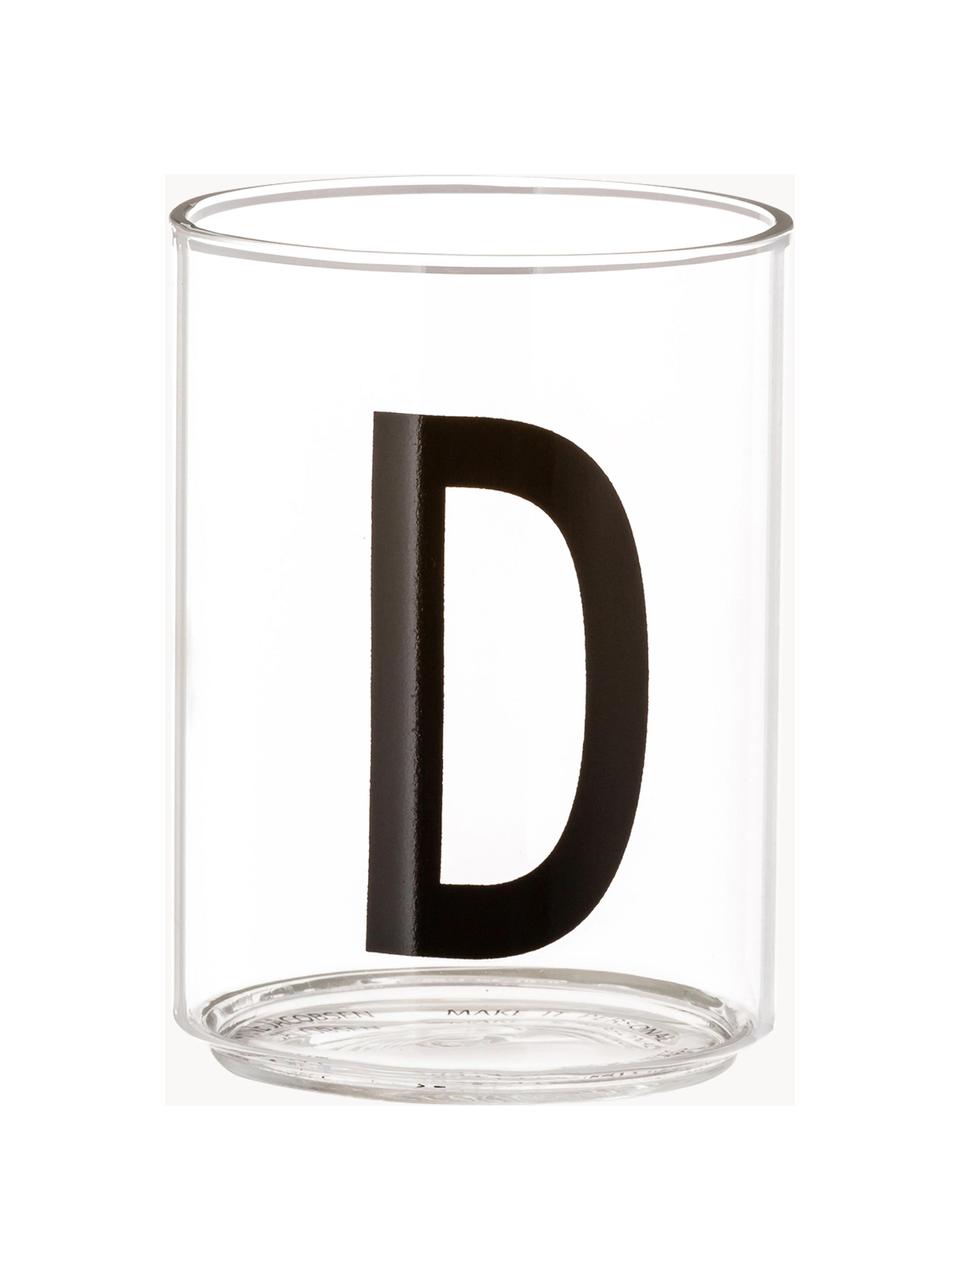 Bicchiere di design in vetro con lettera Personal (varianti dalla A alla Z), Vetro borosilicato, Trasparente, nero, Bicchiere per l'acqua A, 300 ml